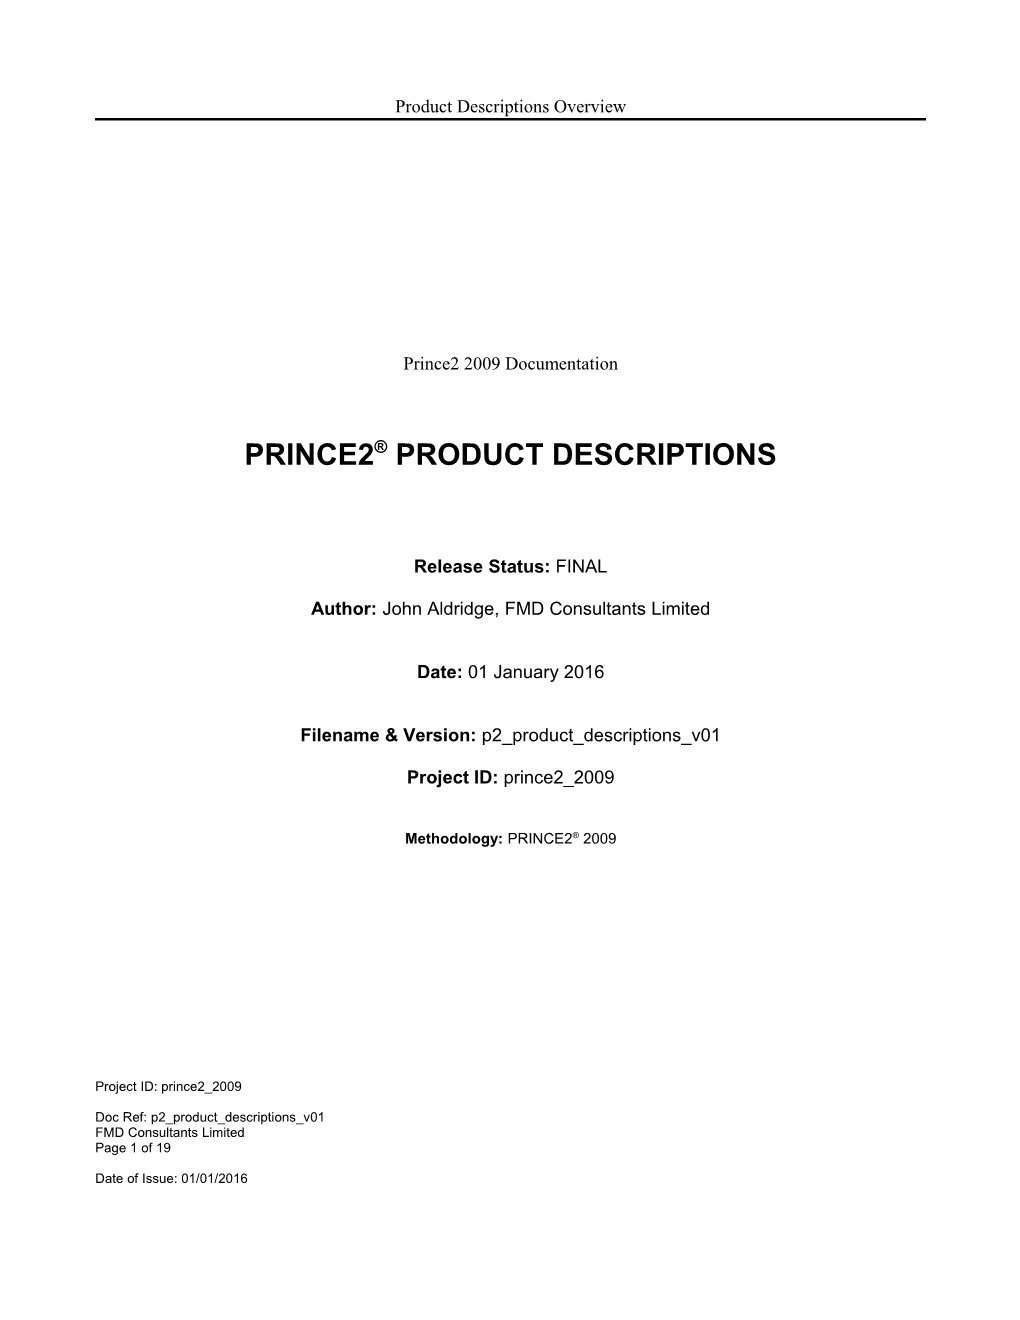 Prince2 Product Descriptions